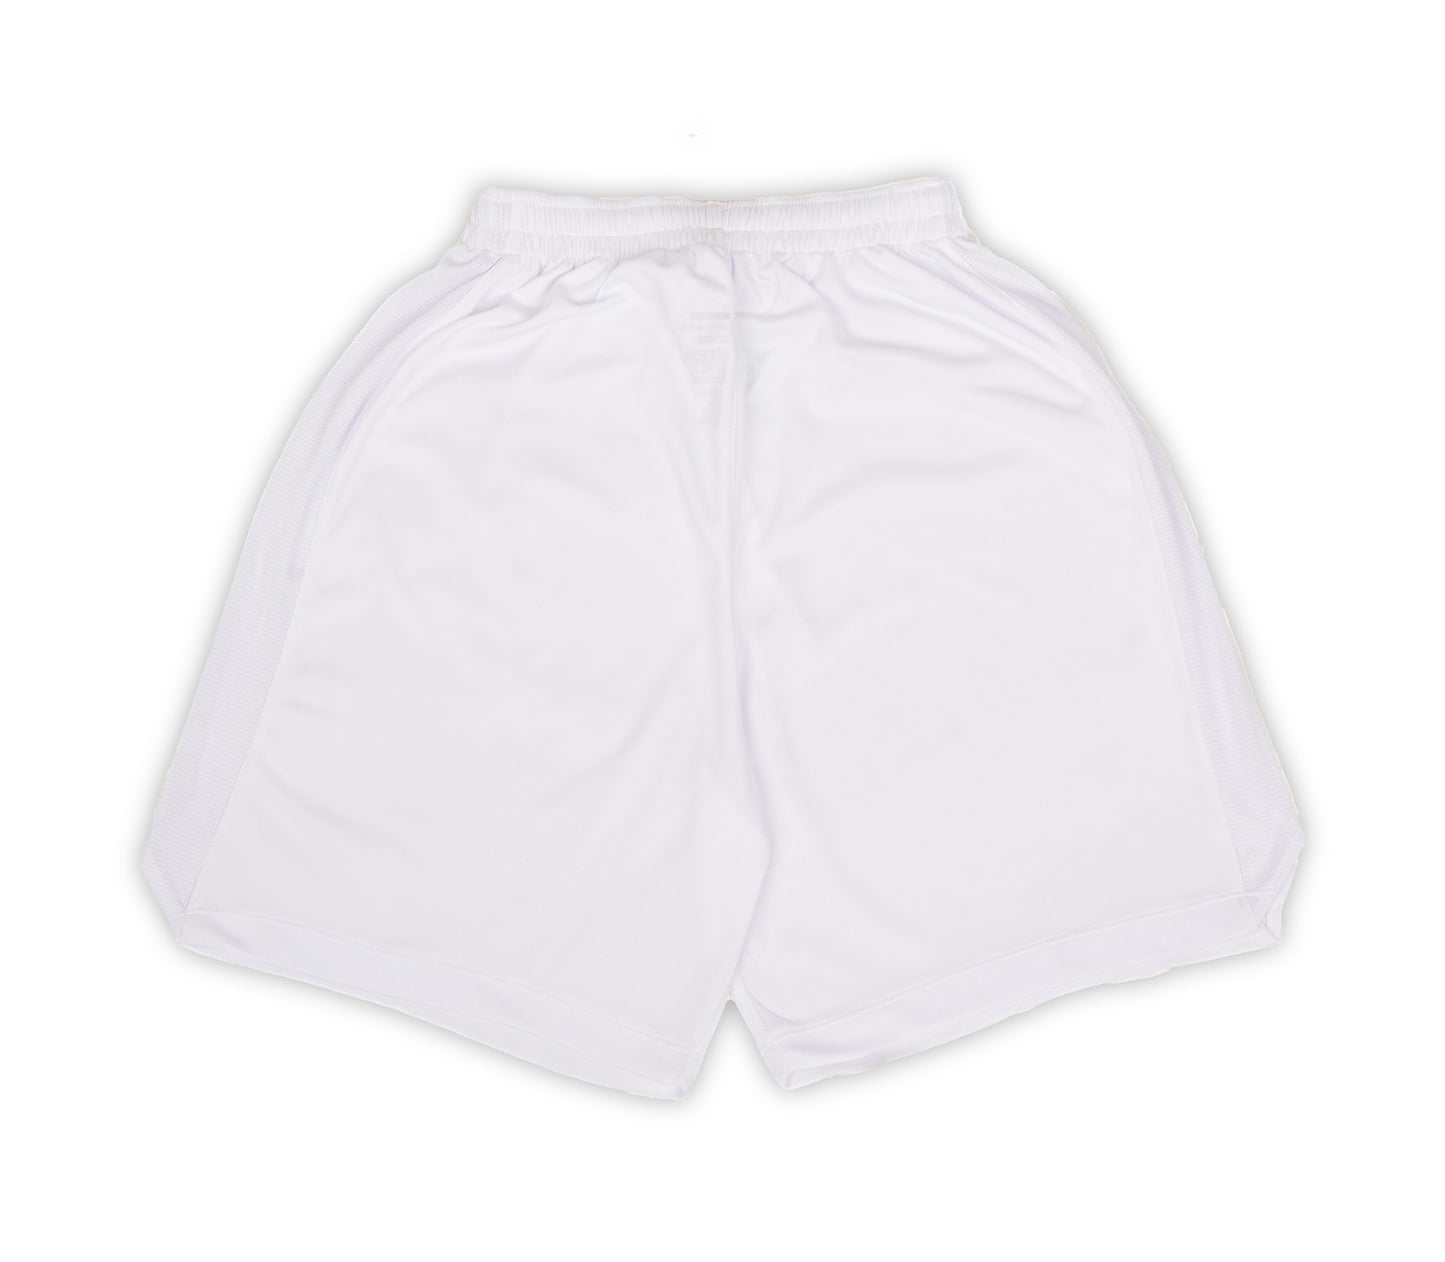 AZA Short Pants Basketball Basic Tone to Tone - White